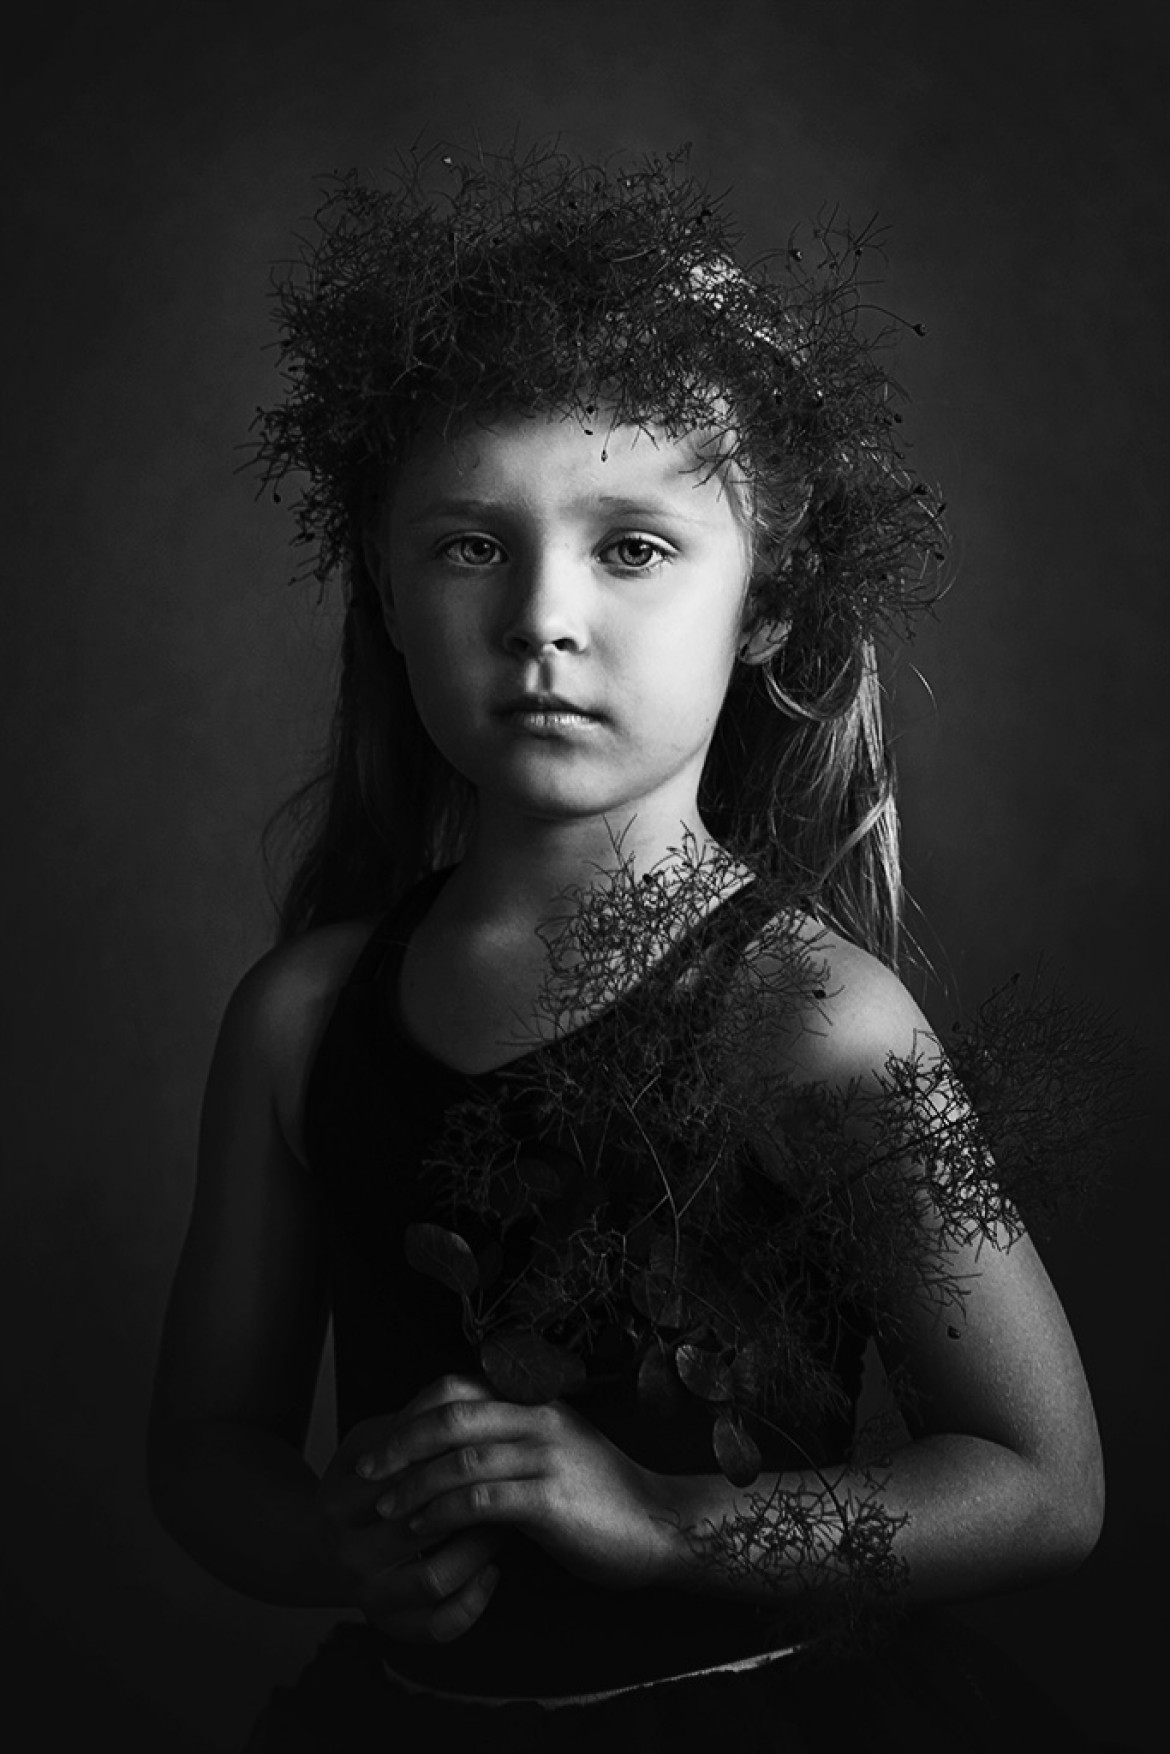 fot. Agnieszka Kozłowska, wyróżnienie / B&W Child 2020